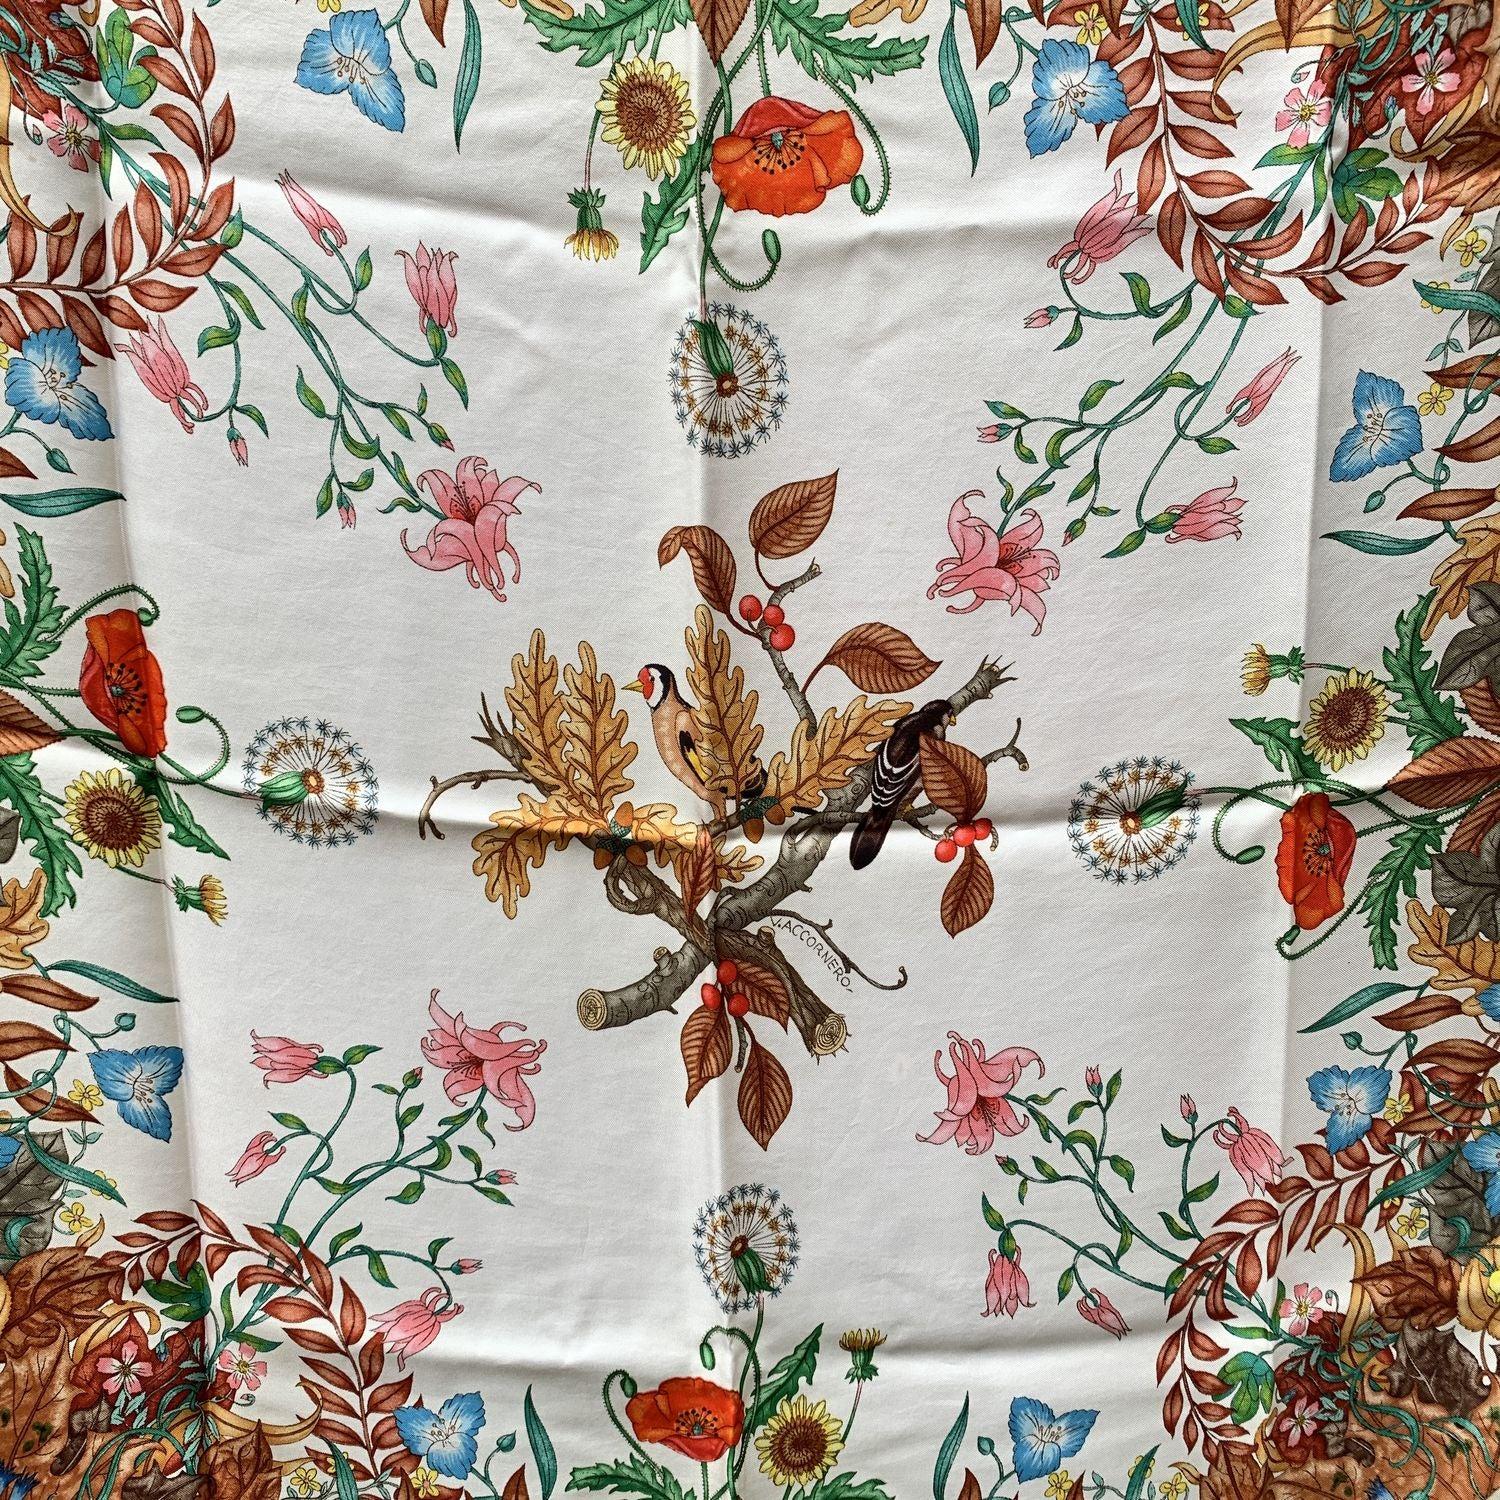 Gucci Vintage Fall themed Silk Scarf, entworfen von Vittorio Accornero für GUCCI in der Zeit zwischen den 60er und den ersten Jahren der 80er Jahre. Mehrfarbige Blumen mit Vögeln in der Mitte des Designs. Grüne Ränder. 100% Seide. Abmessungen: 35 x